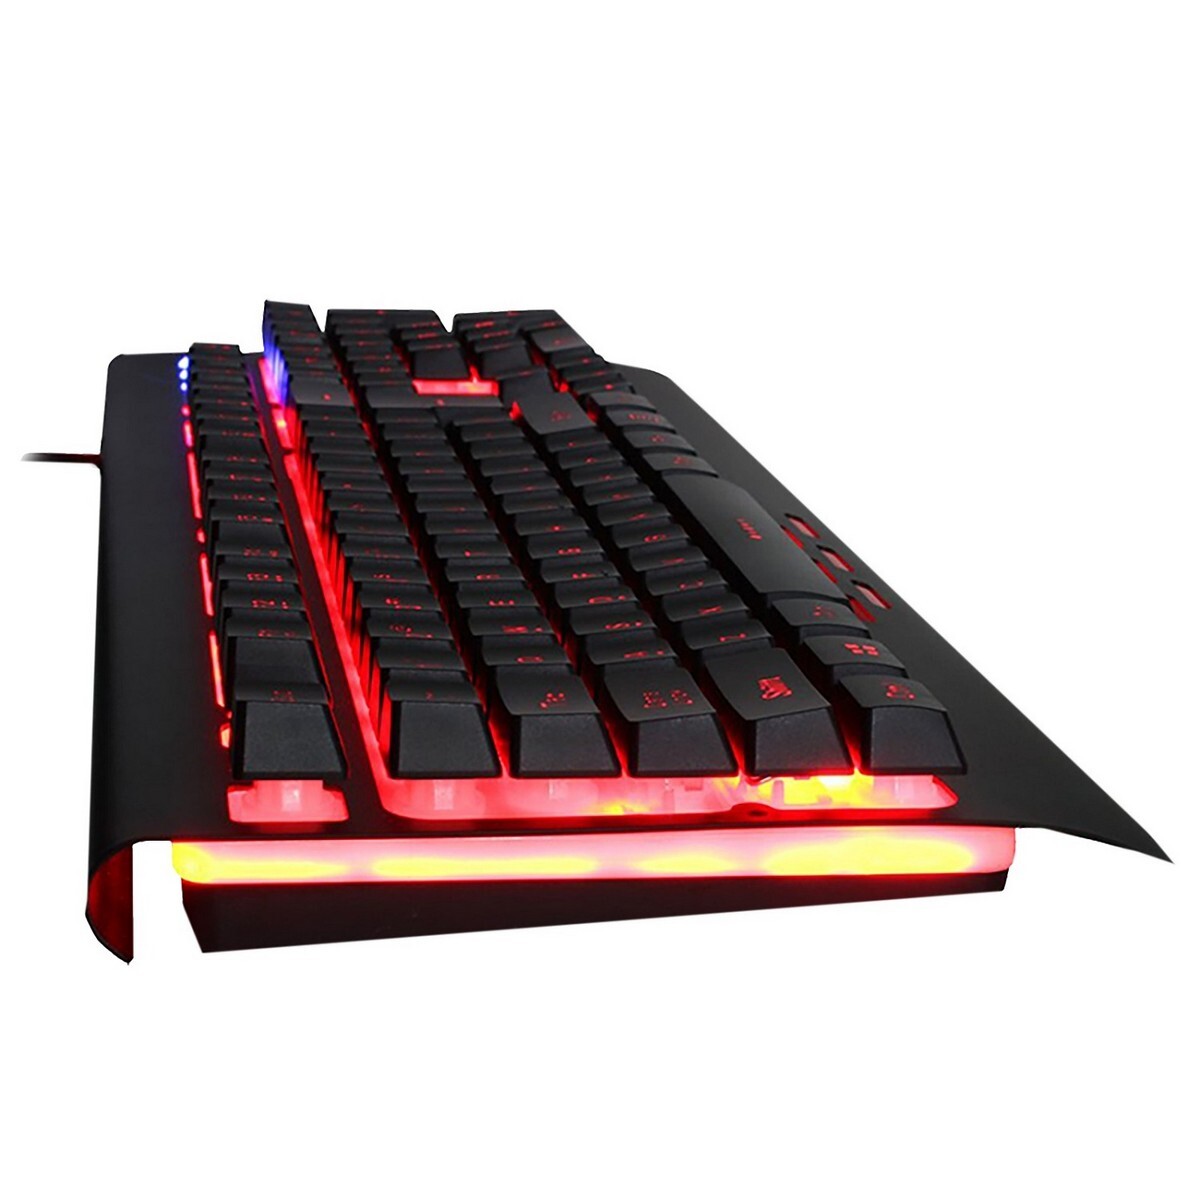 Redgear Mechanical Keyboard Blaze7 MT01s Black